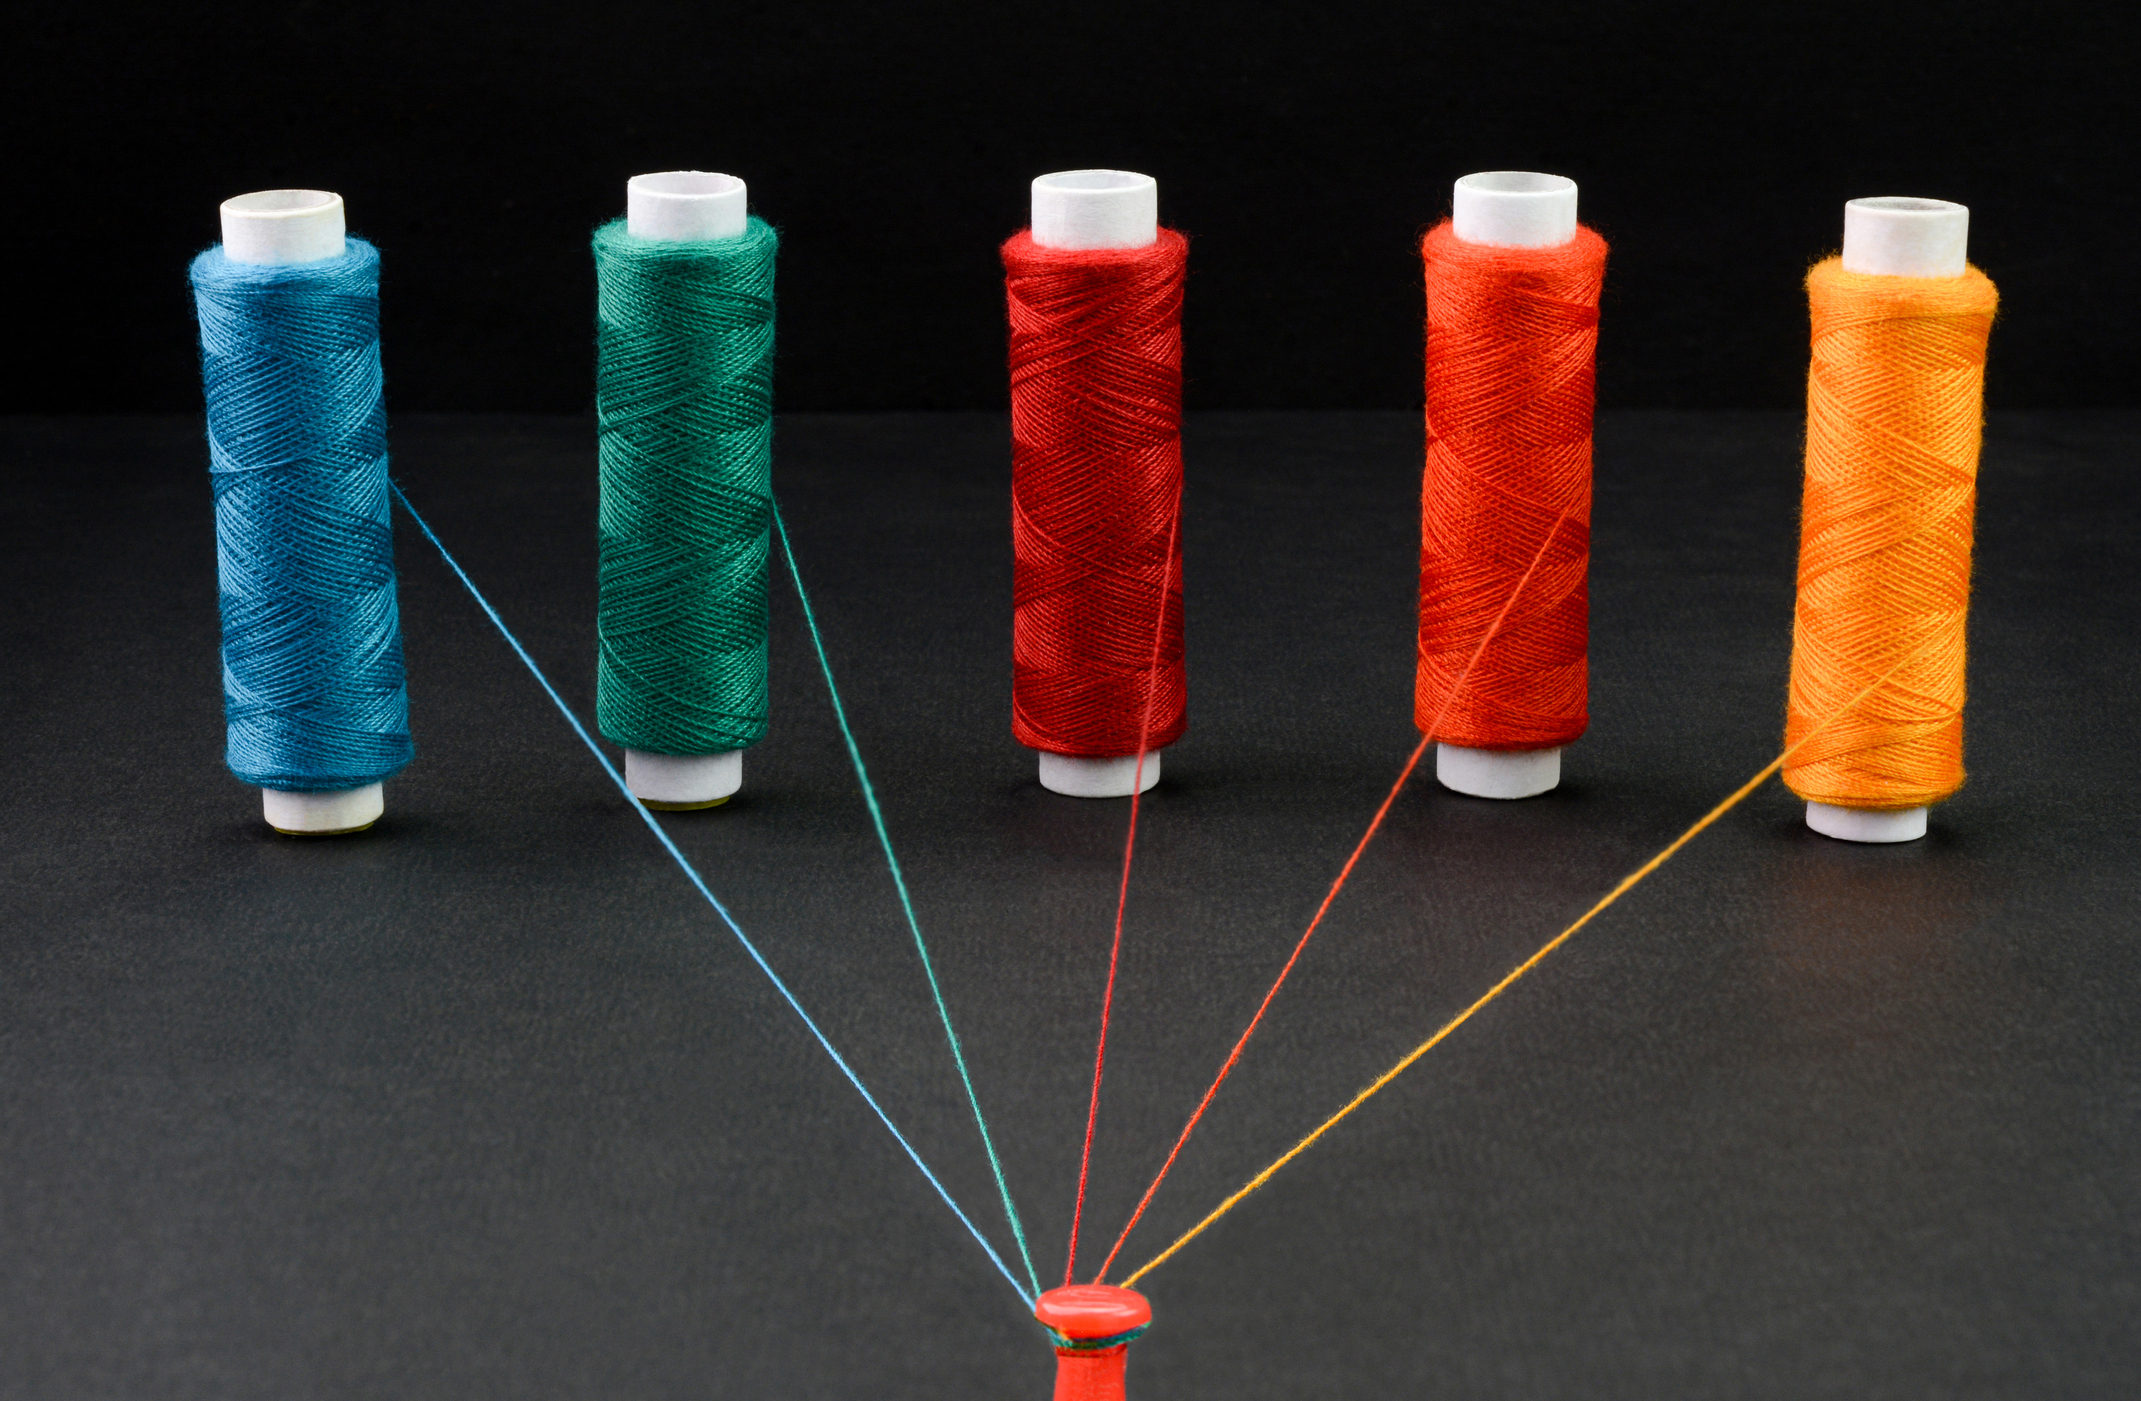 Chaînes multicolores attachées ensemble ;  5 façons de gérer les risques